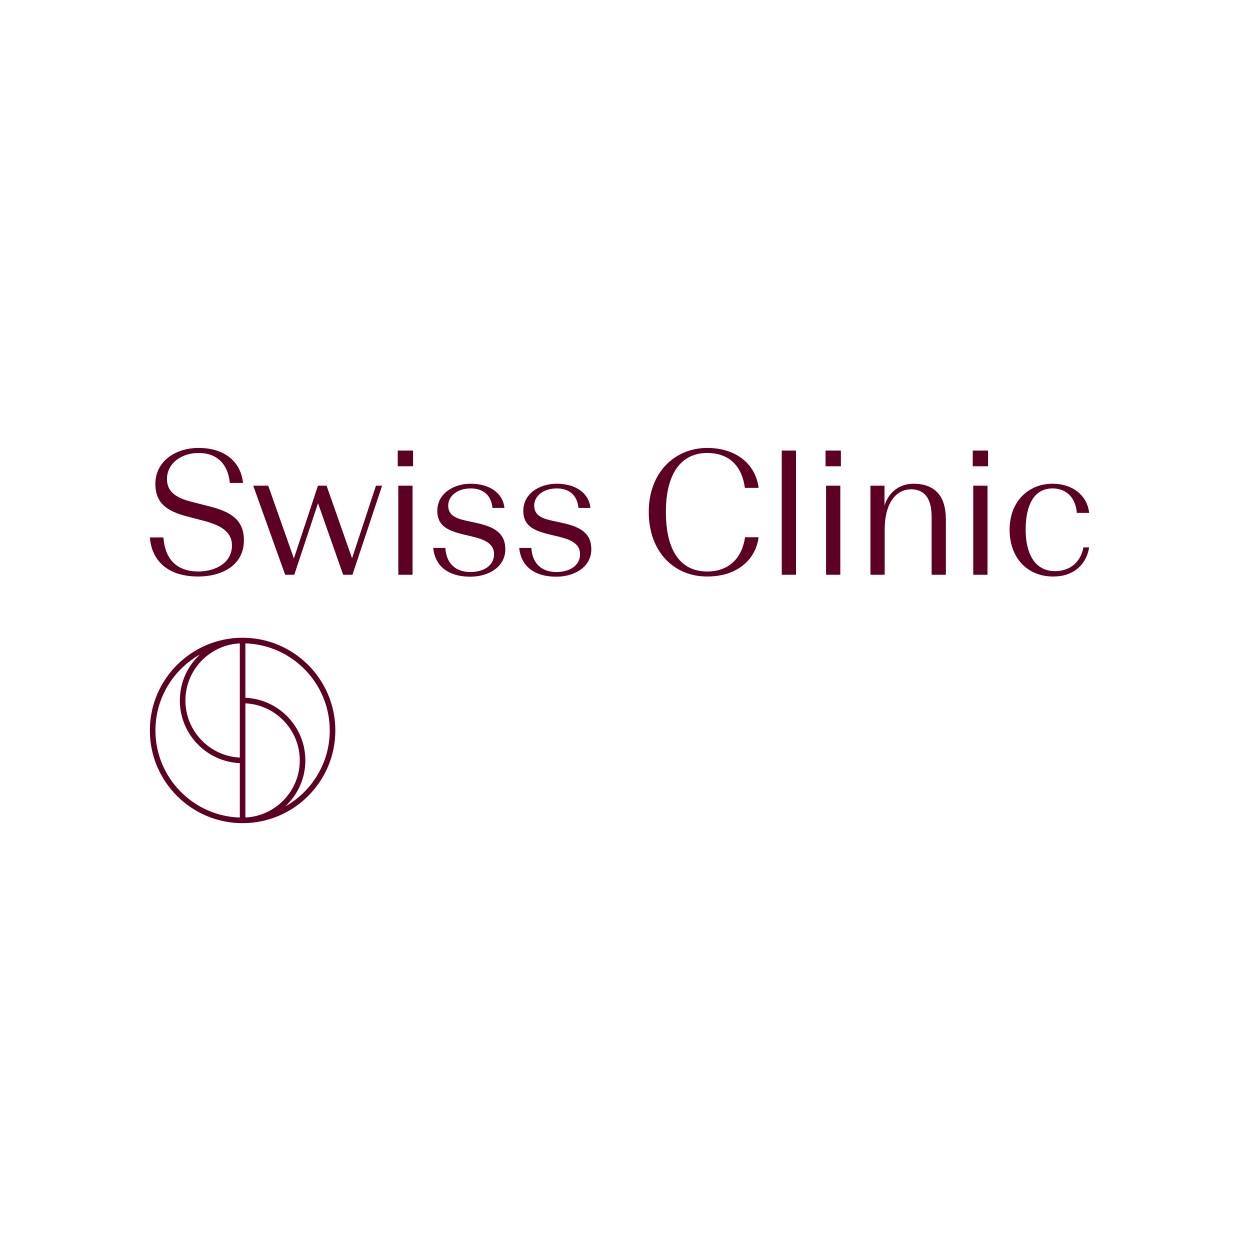 Swissclinic.nl reviews, beoordelingen en ervaringen